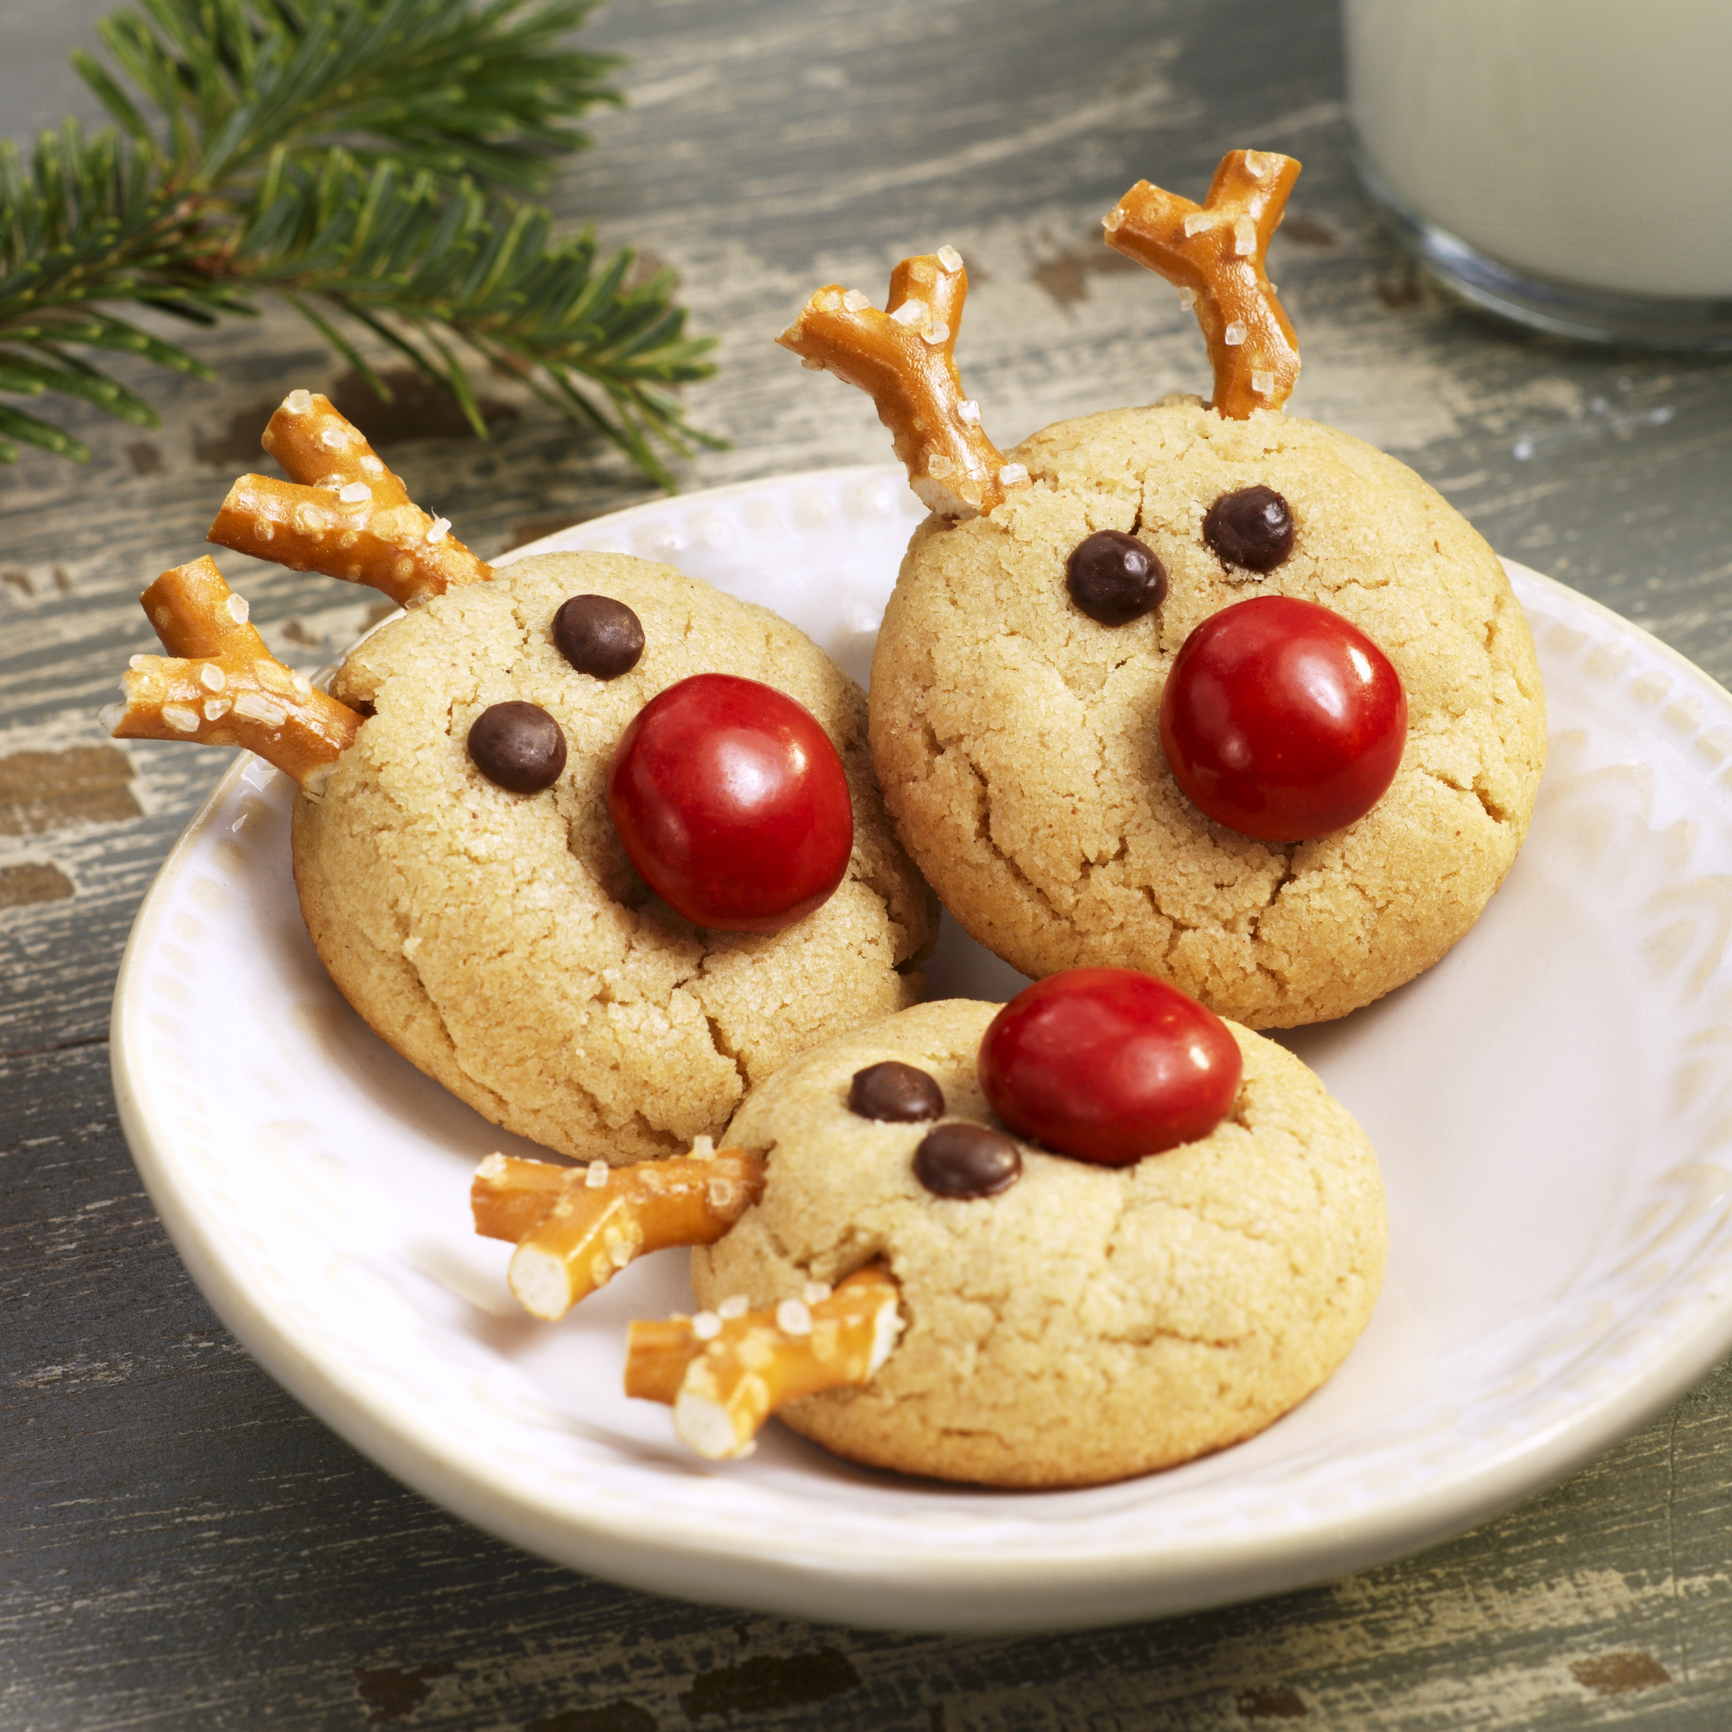 3. Reindeer Cookies